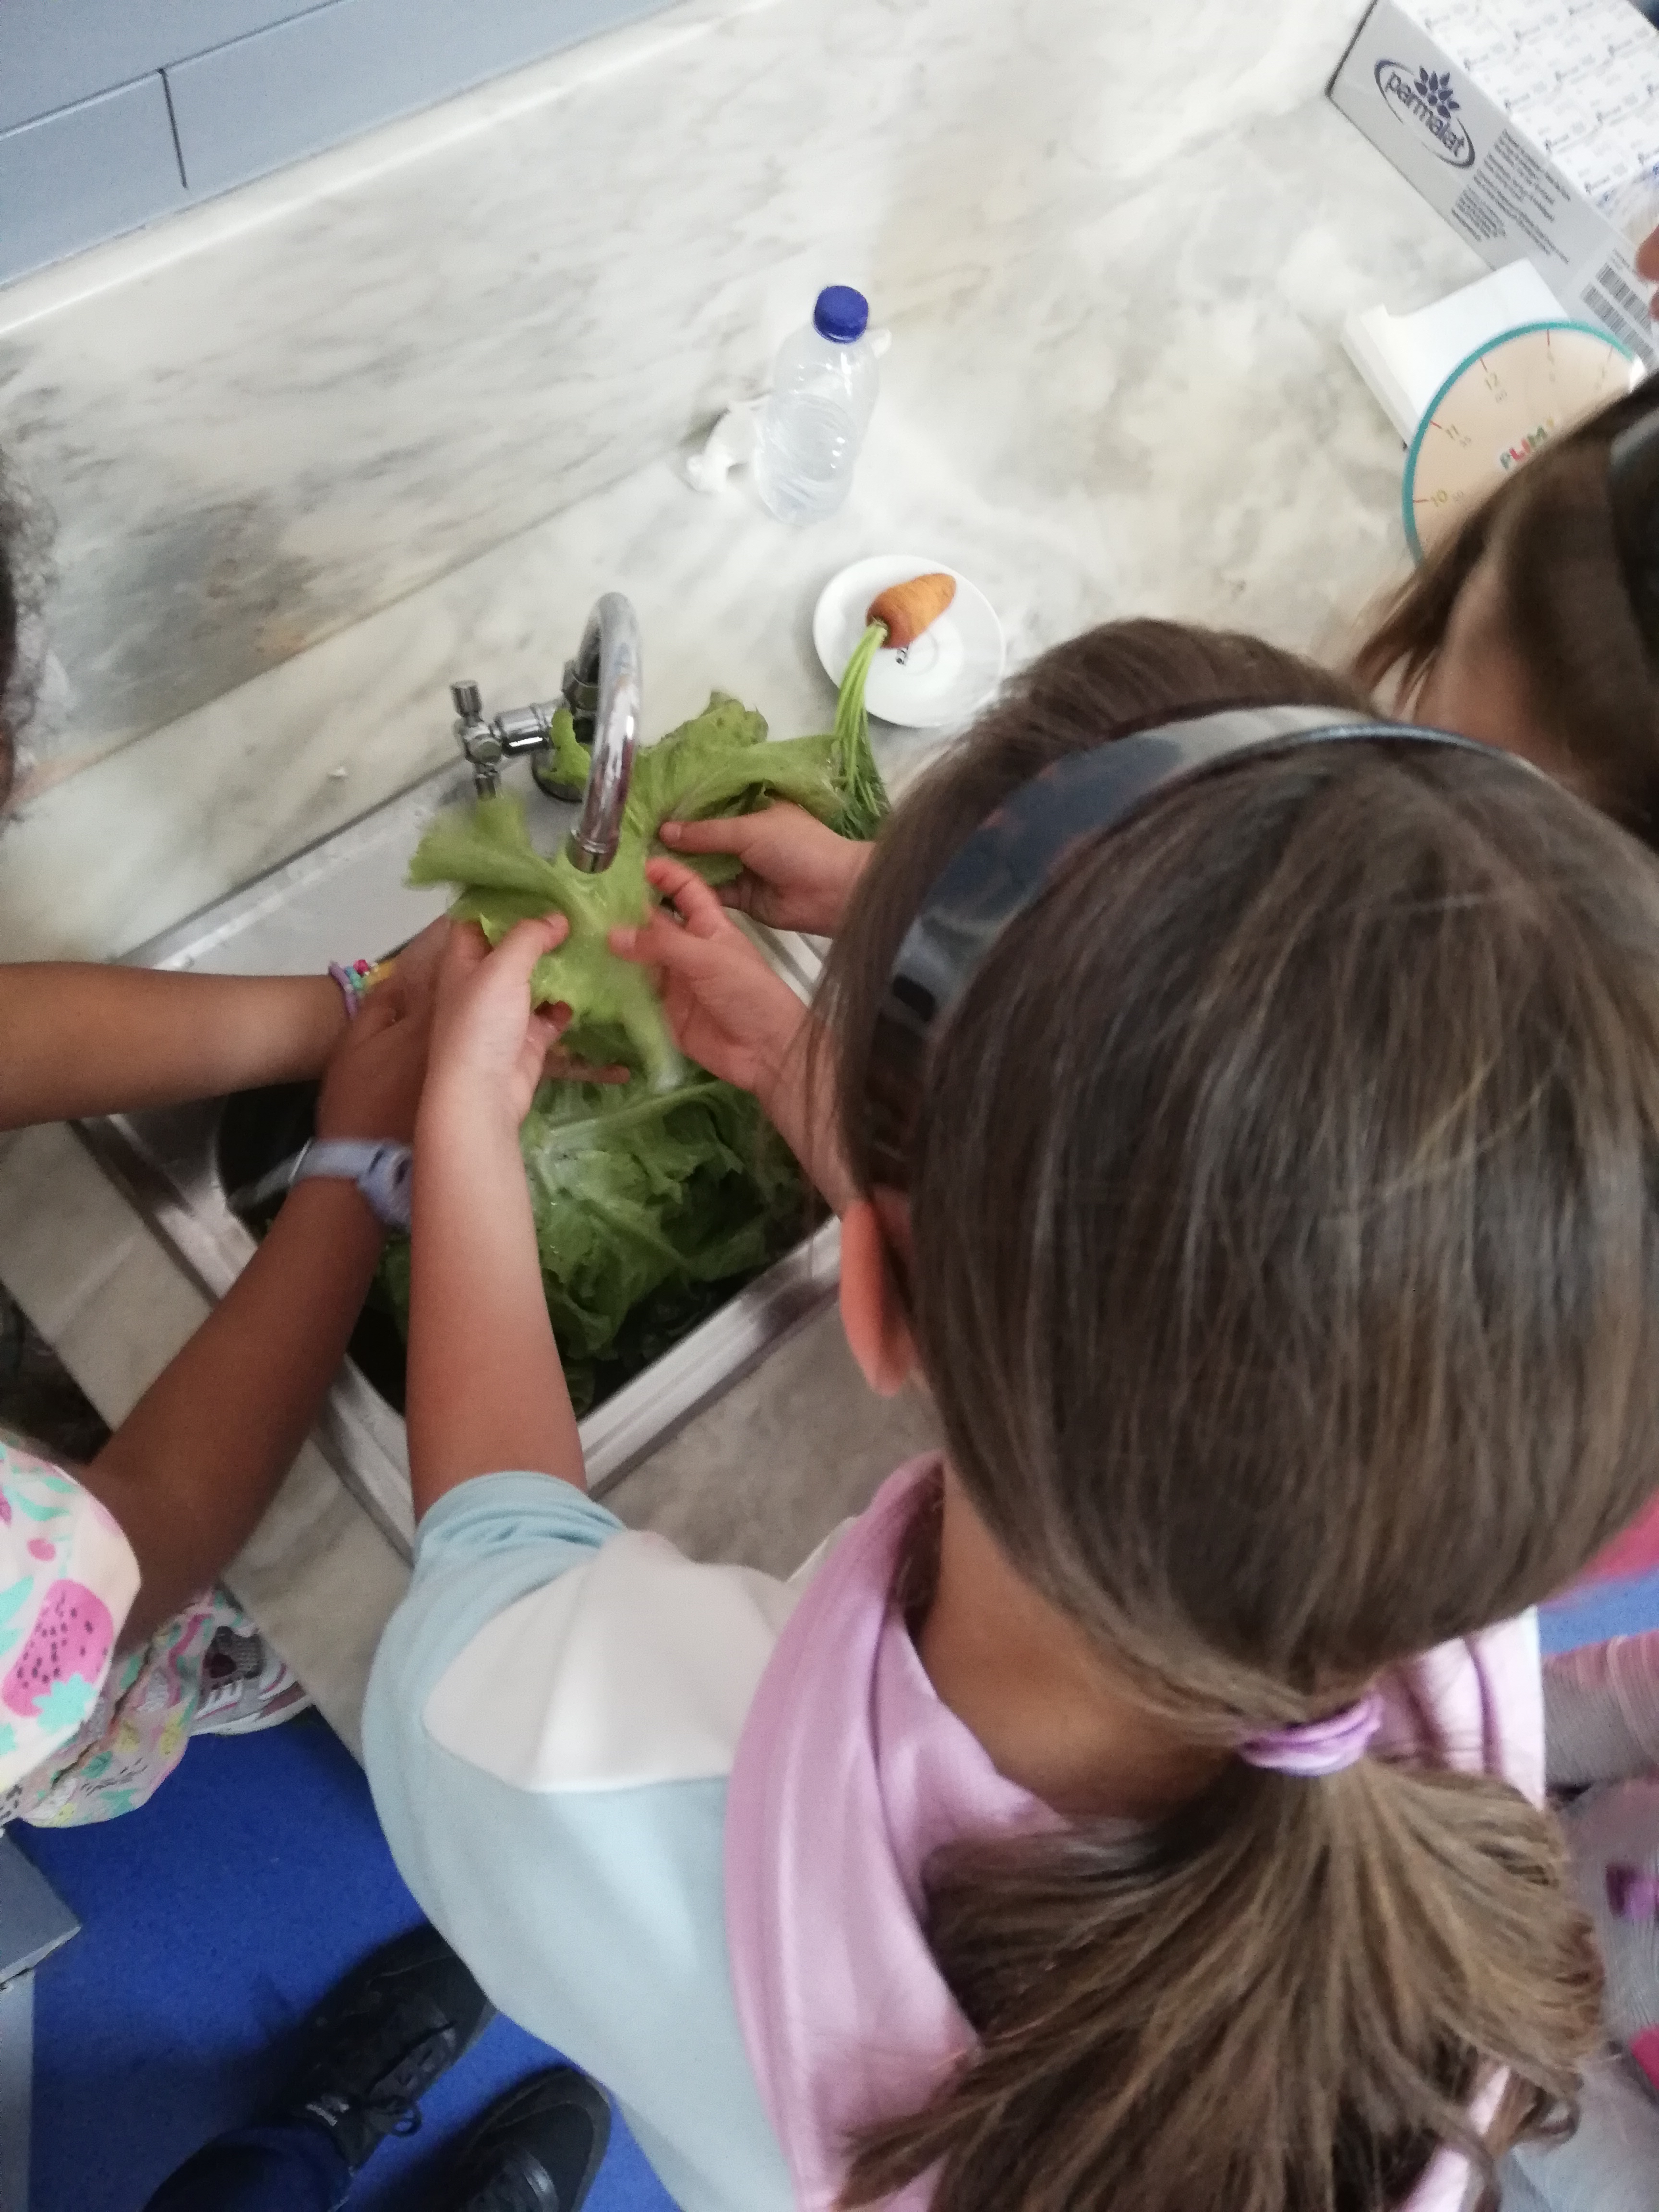 Preparação de uma salada pelos alunos com os produtos que plantaram e agora colheram.